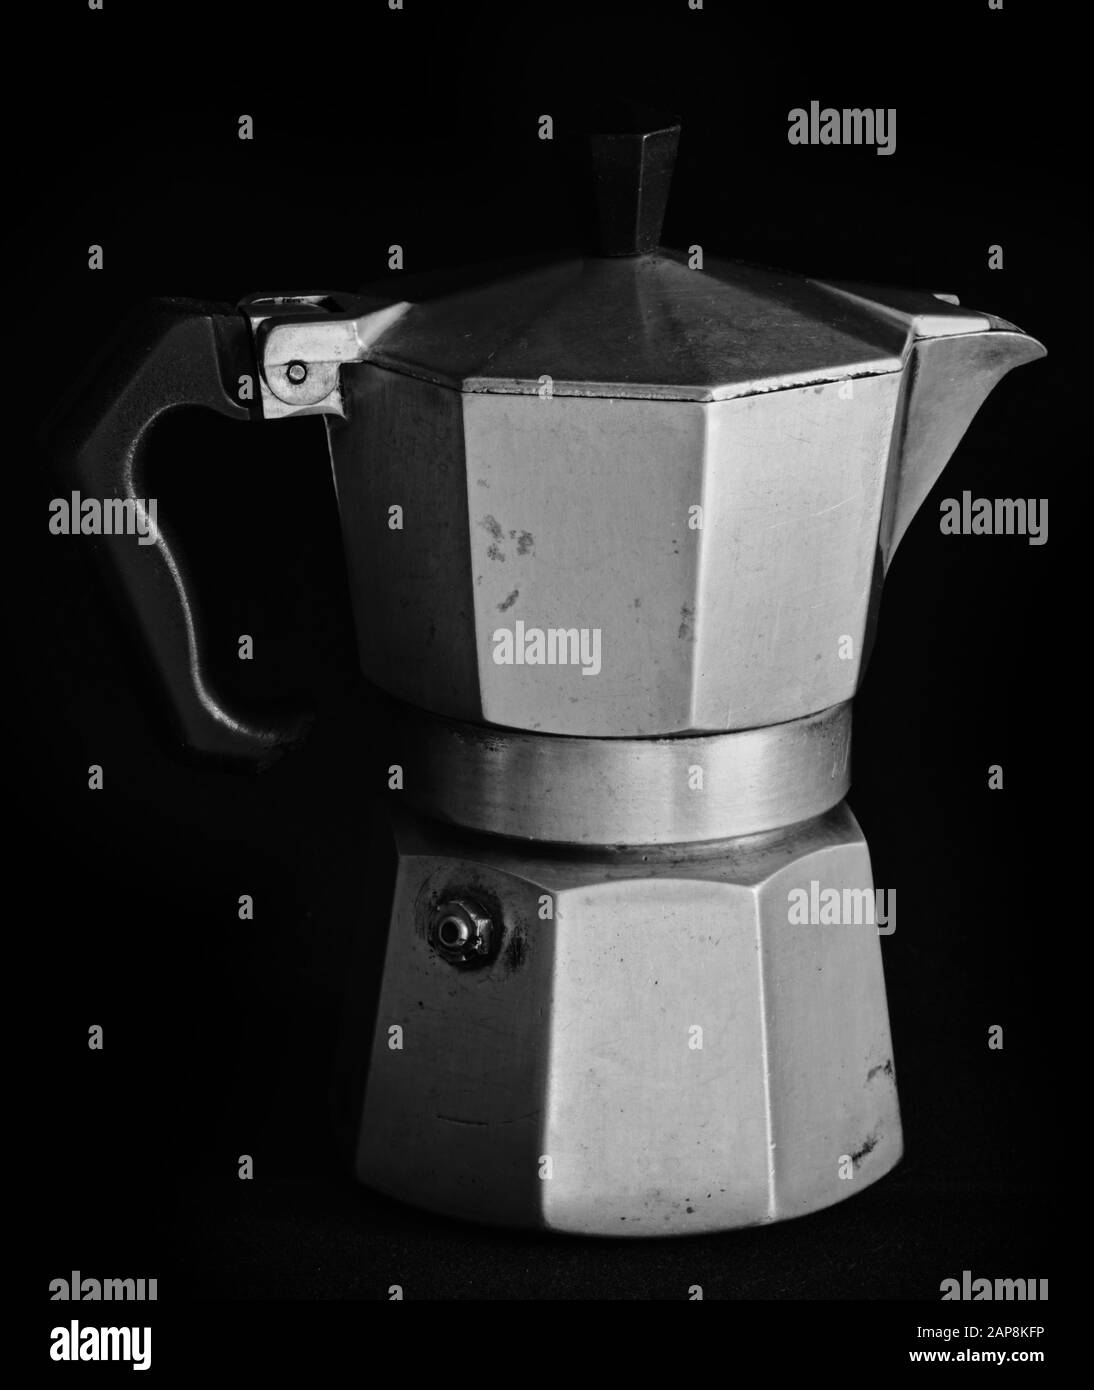 Moka pot coffee maker, made in Italy in alluminium Stock Photo